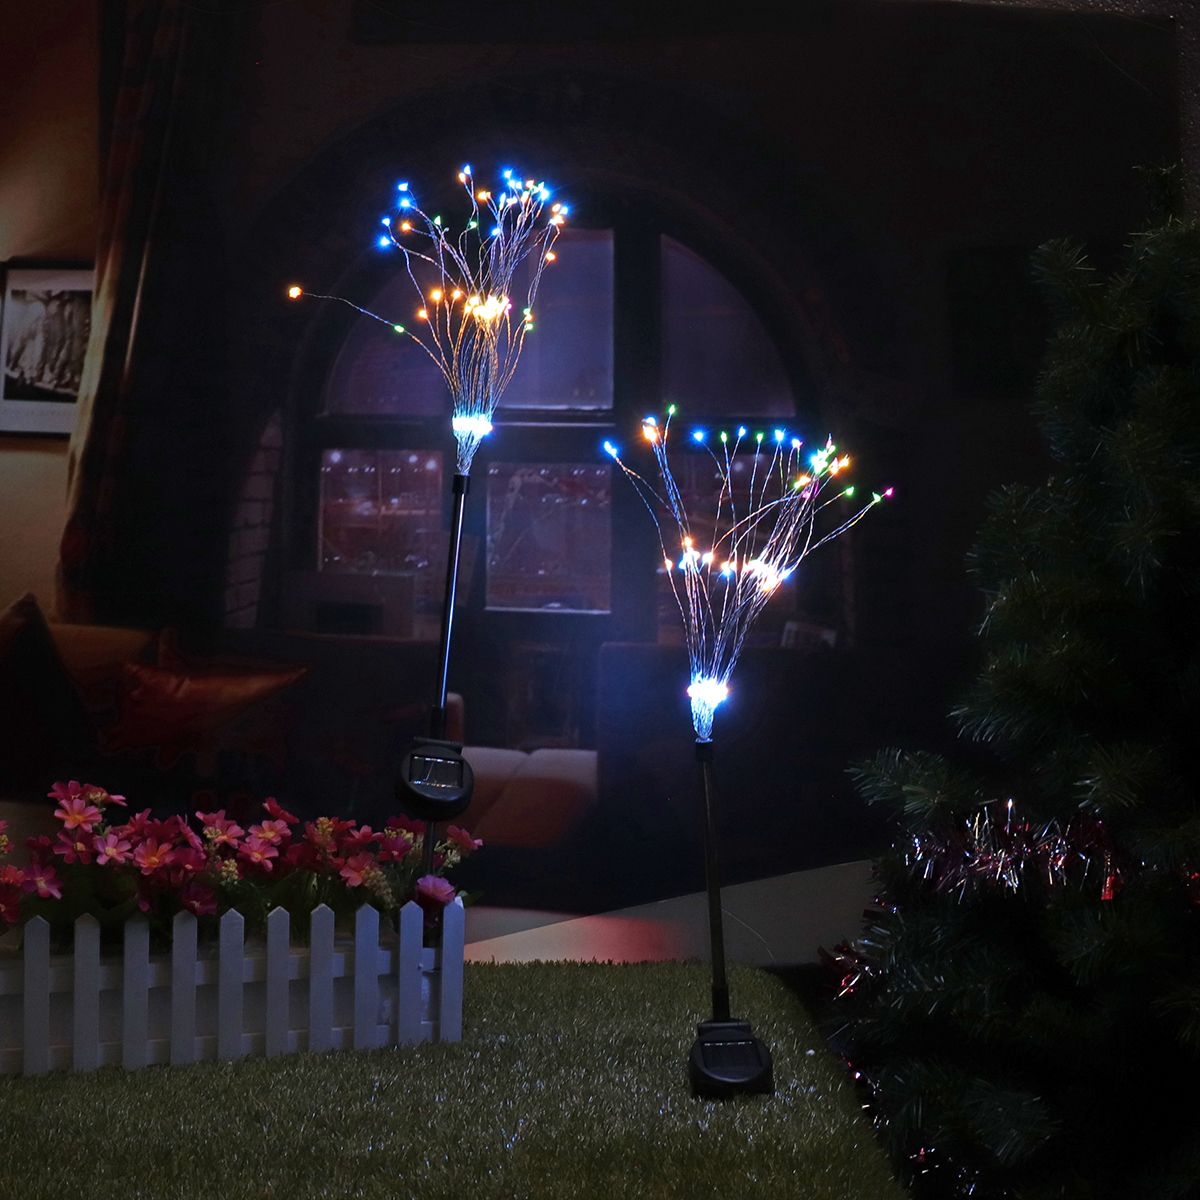 2PCS-Solar-Powered-105LED-Starburst-Fireworks-Fairy-String-Landscape-Light-Christmas-Outdoor-Decor-1370703